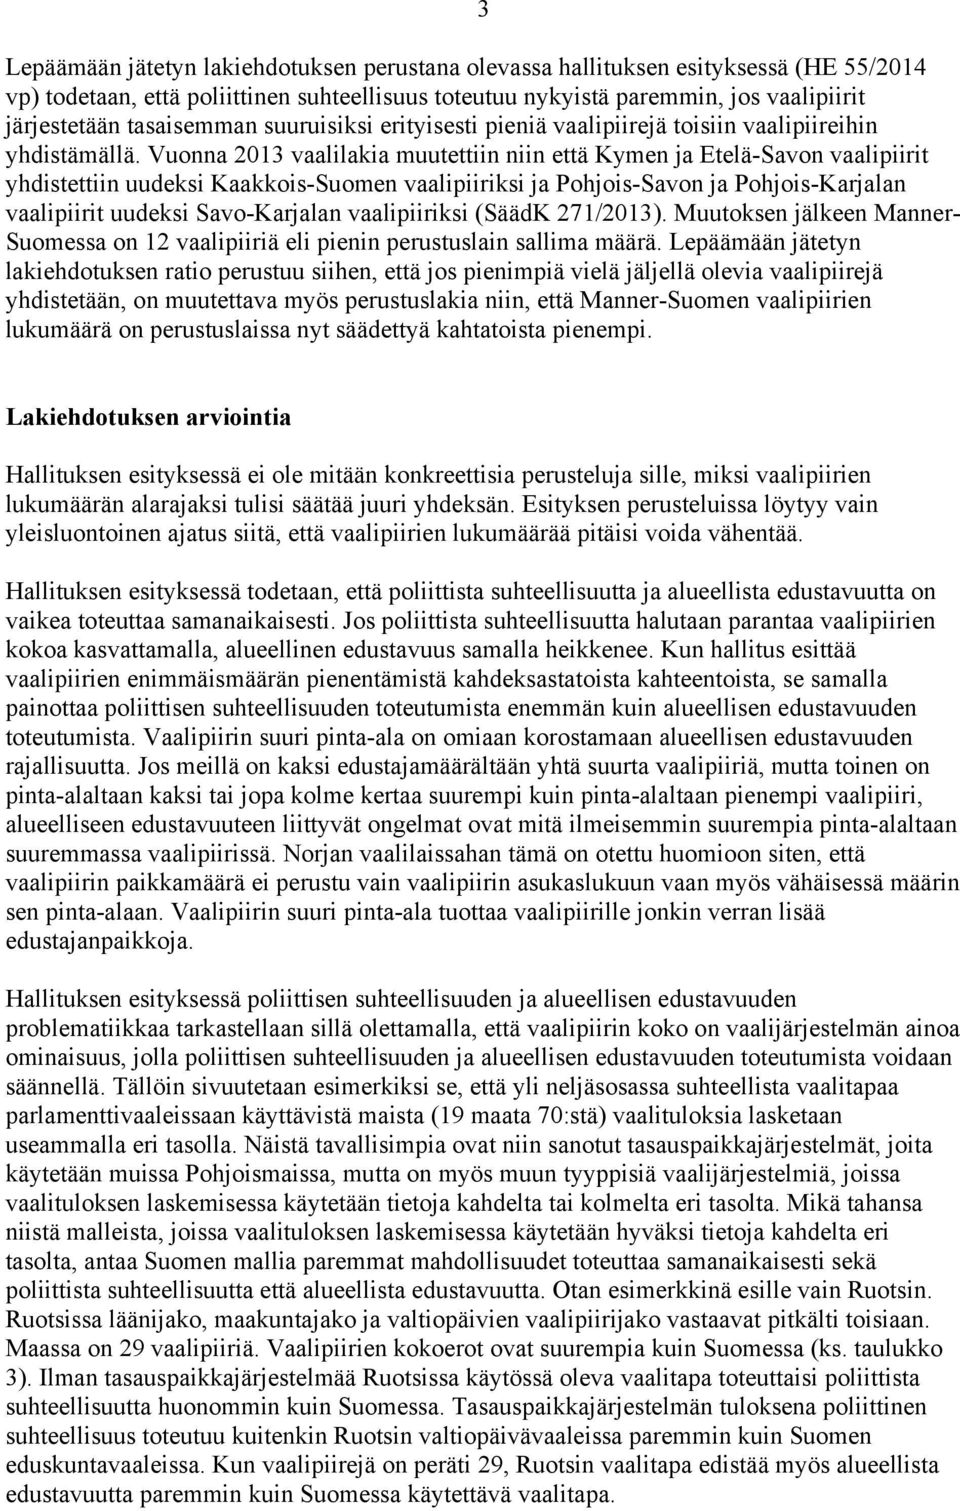 Vuonna 2013 vaalilakia muutettiin niin että Kymen ja Etelä-Savon vaalipiirit yhdistettiin uudeksi Kaakkois-Suomen vaalipiiriksi ja Pohjois-Savon ja Pohjois-Karjalan vaalipiirit uudeksi Savo-Karjalan